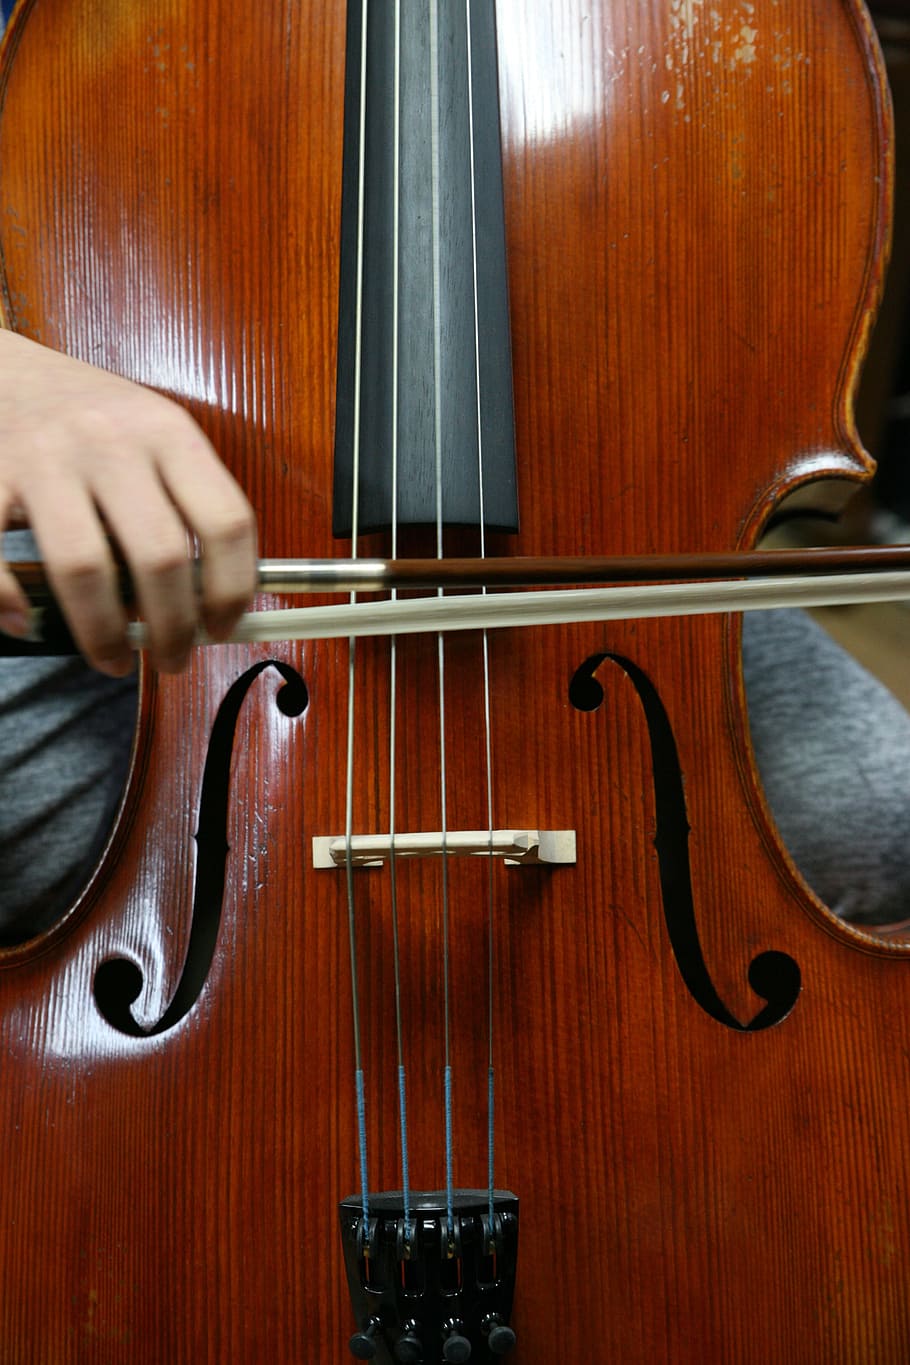 violín, madera, clásico, música, música clásica, violonchelo, tocado, instrumento, concierto, espectáculo